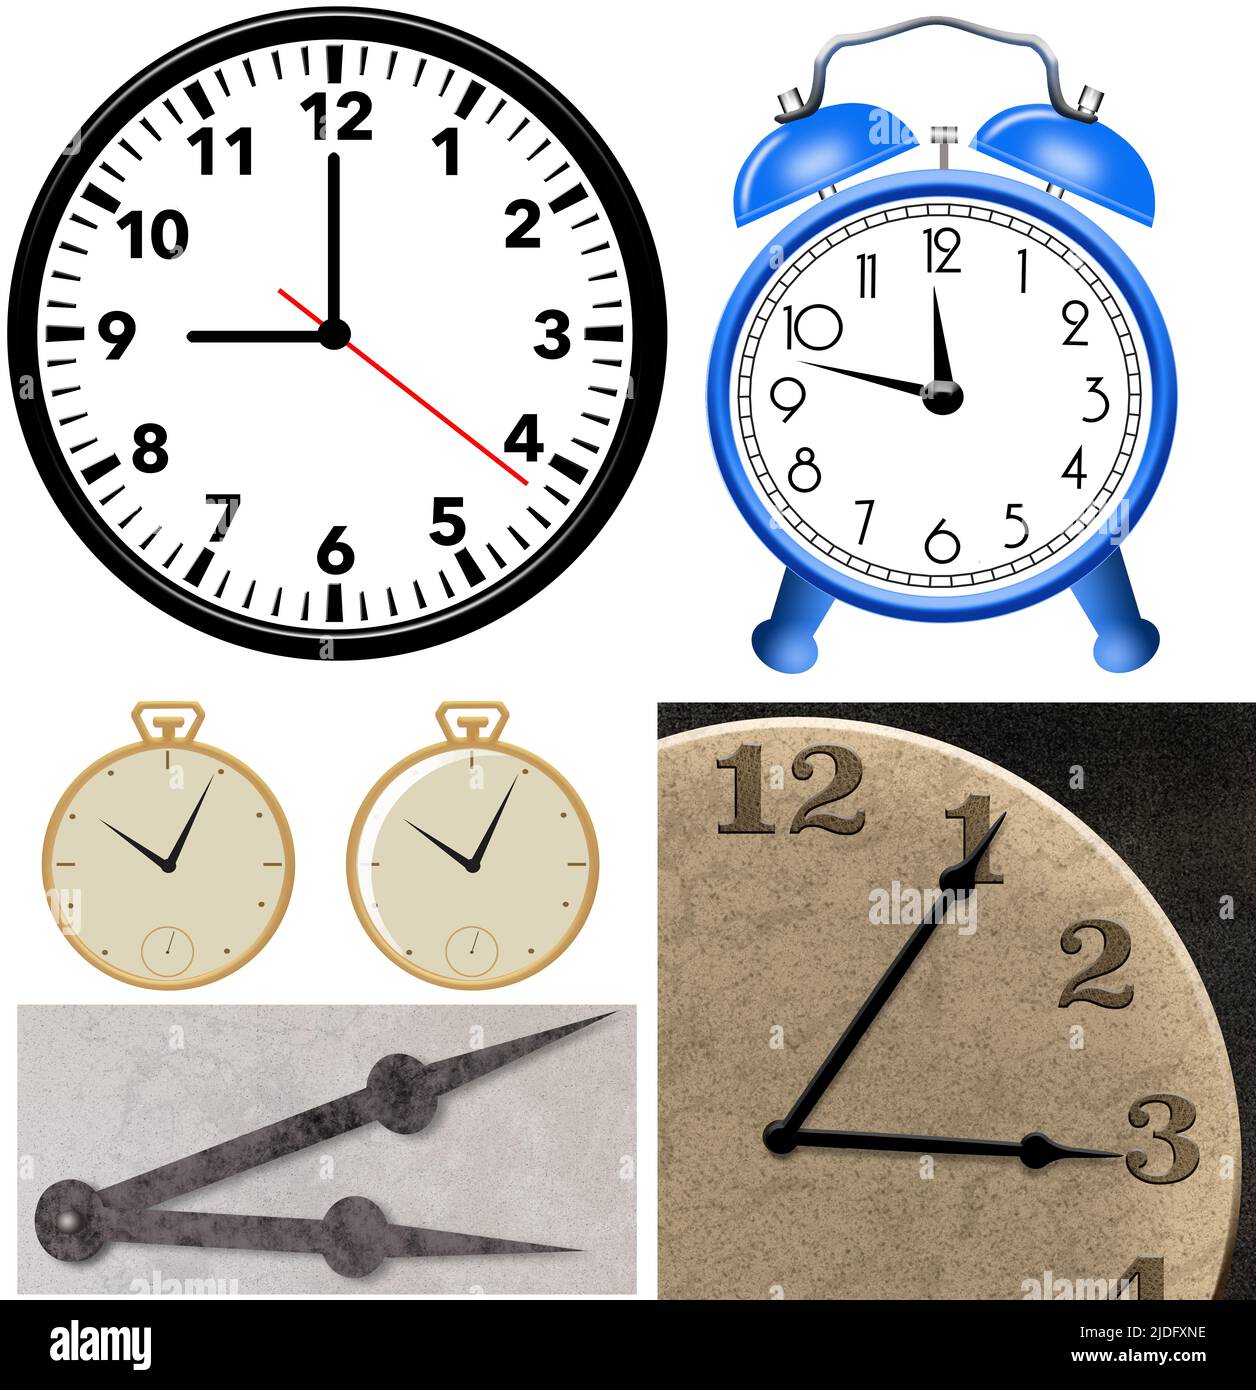 Los relojes y los relojes se ven como recurso gráfico 3-d ilustraciones aisladas sobre fondo blanco. Foto de stock